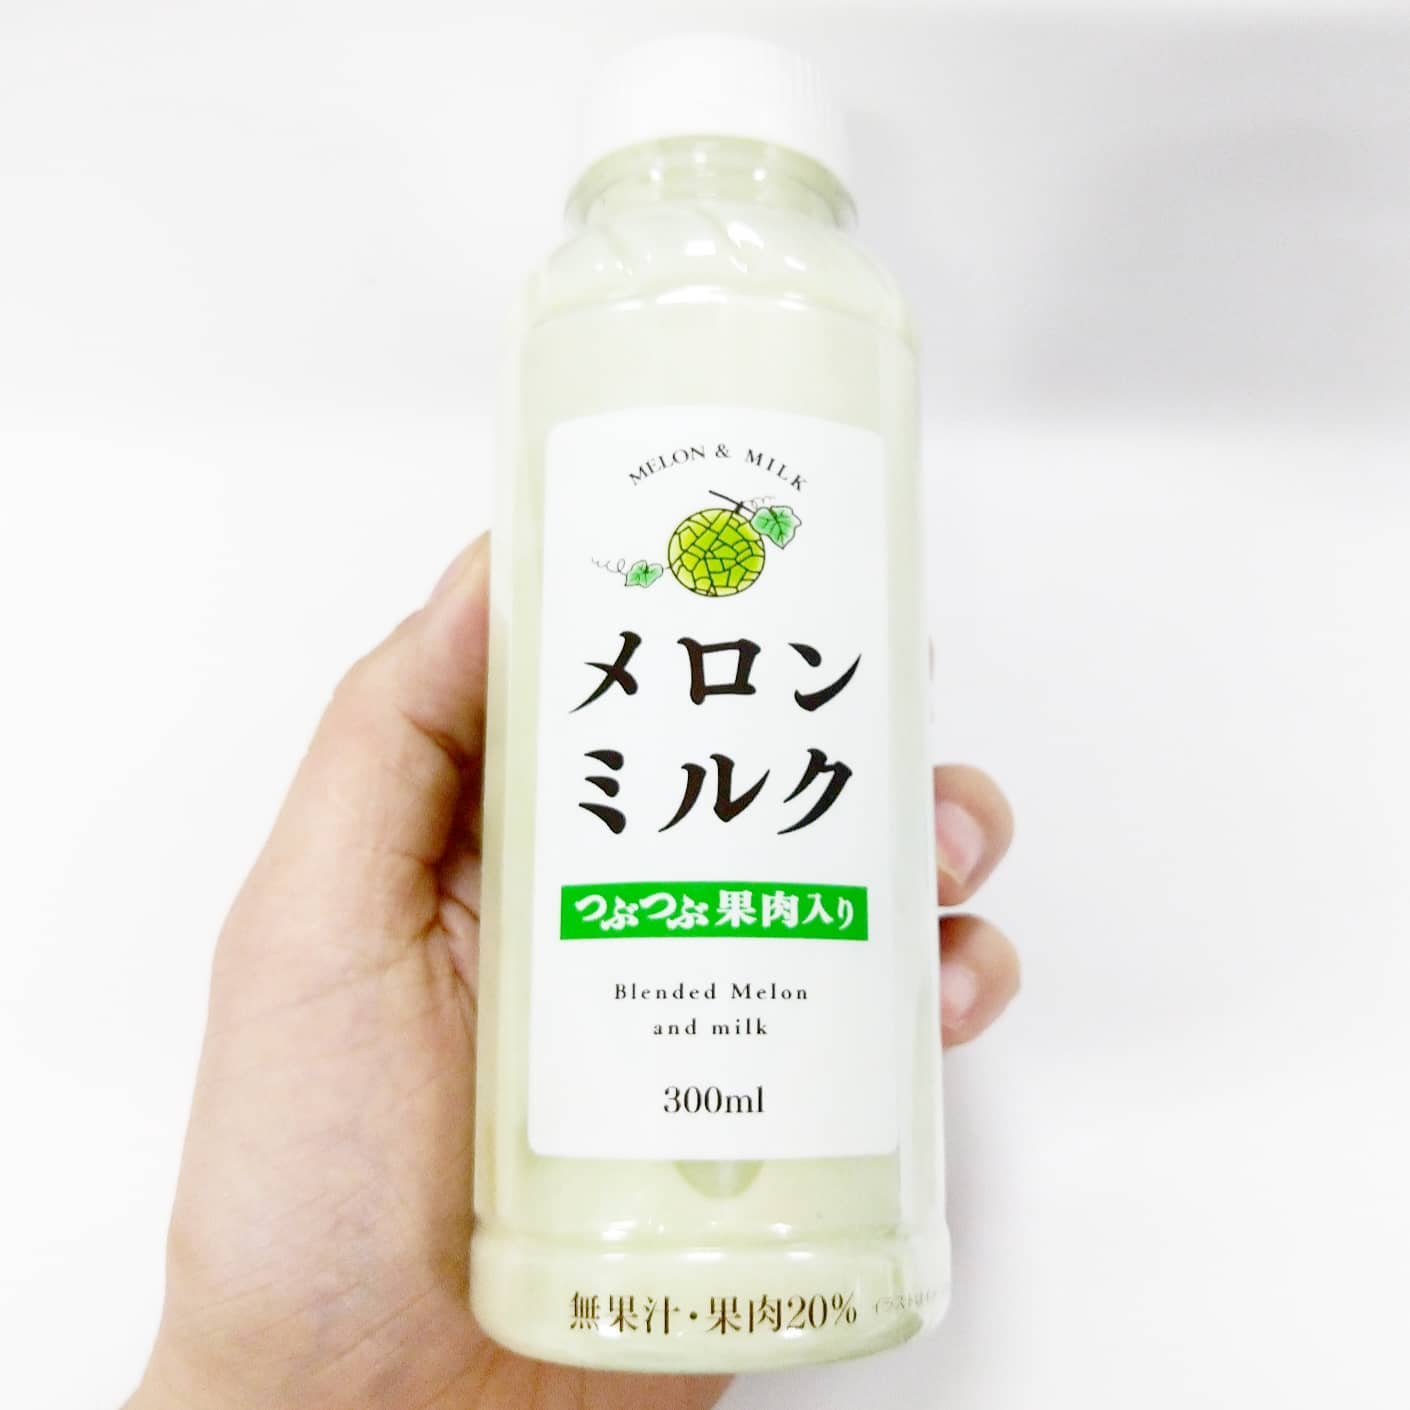 #いちご牛乳クラブ#メロンミルク#アグリテクノ梁川工場#侍猫度☆☆☆☆★謎メロン系－－－－＋本物メロン系甘さ強め系－＋－－－控え目系こってり系－＋－－－さっぱり系超ミルク系－＋－－－ほんのり系このメロンミルク超うまい！もっと大盛りのやつが欲しいよね！ファミマで売ってるこのミルクシリーズは、イチゴミルクも美味いんだよね！#メロン #メロンジュース #メロンオレ #メロン牛乳 #スイーツ #スイーツ好き #スイーツスタグラム #スイーツタイム #スイーツ写真 #strawberry #strawberrymilk #strawberrymania #sweetstagram #sweetfood